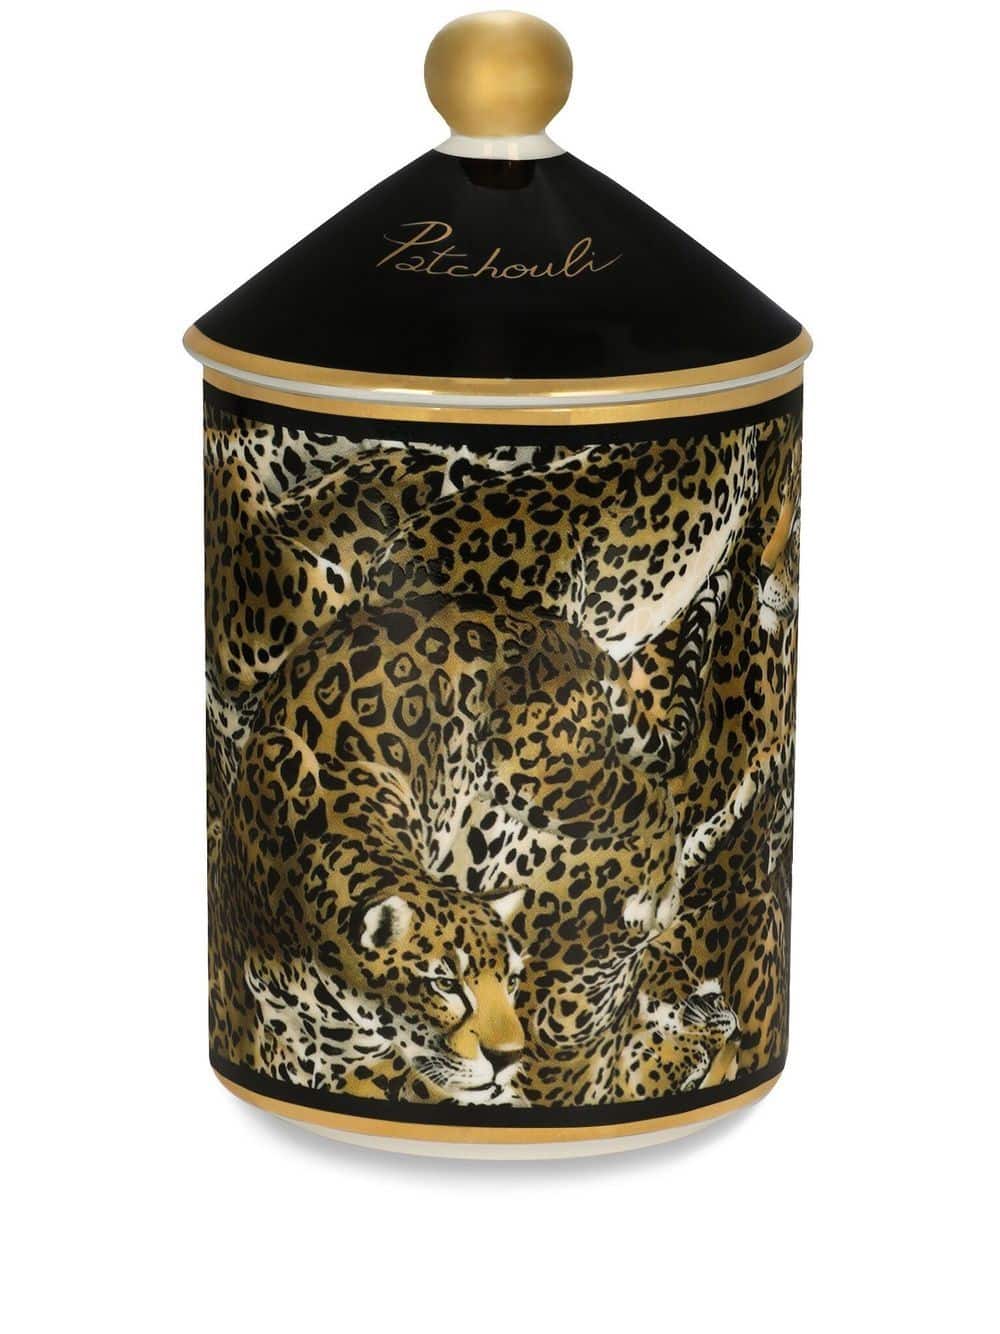 Dolce & Gabbana Geurkaars met luipaardprint (340g) - Zwart